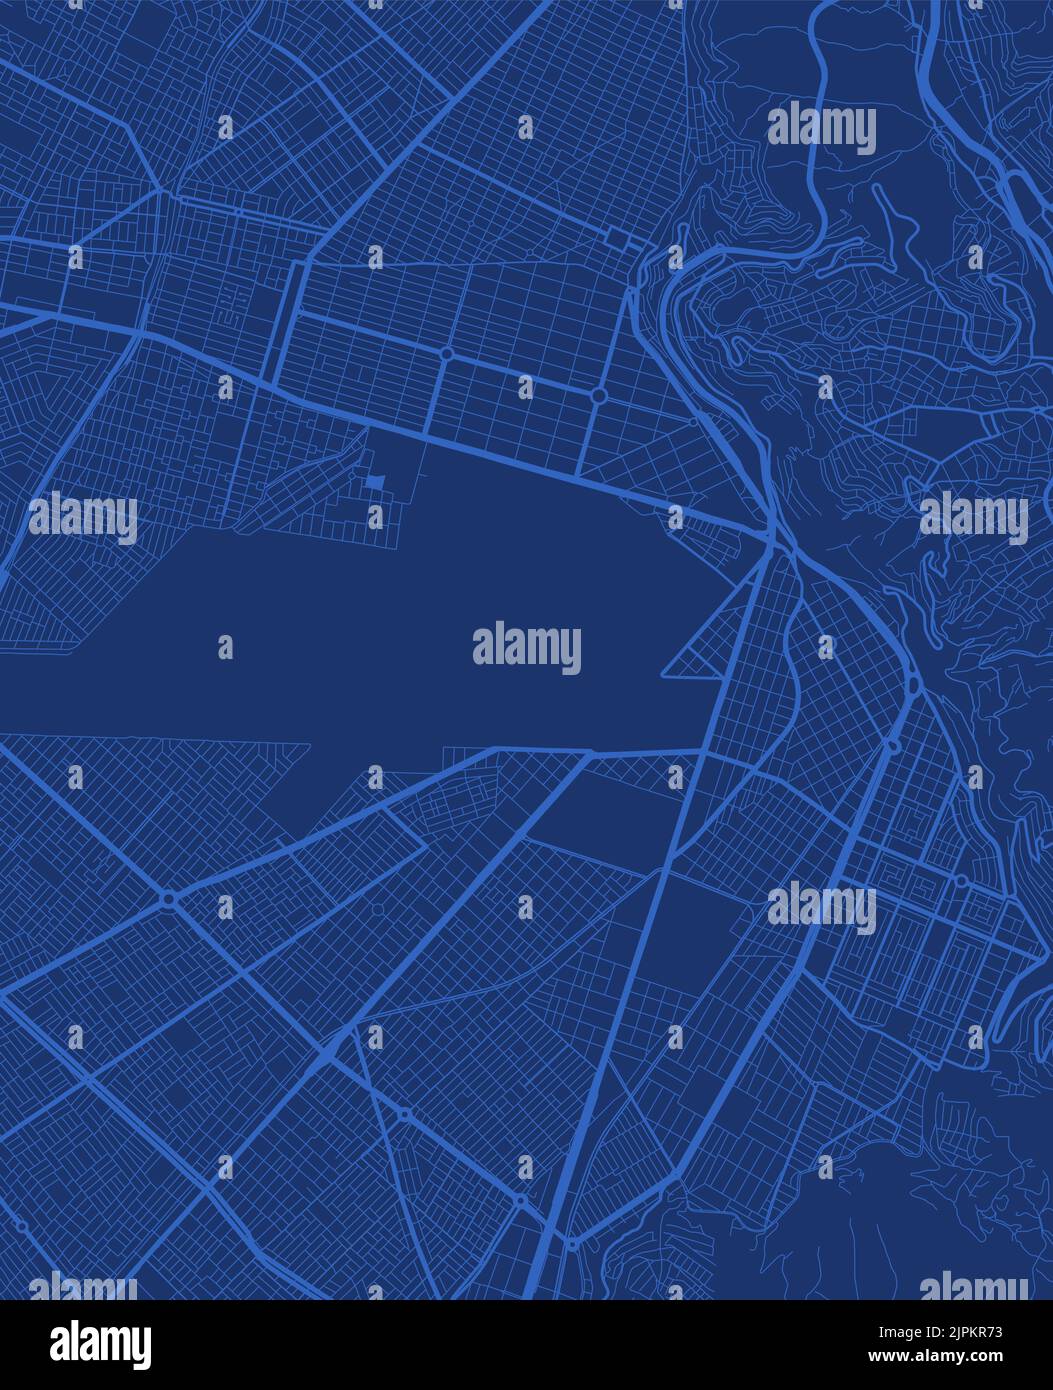 Cartellone vettoriale dettagliato dell'area amministrativa della città di El Alto. Panorama blu dello skyline. Mappa turistica grafica decorativa del territorio di El Alto. Royalty fr Illustrazione Vettoriale